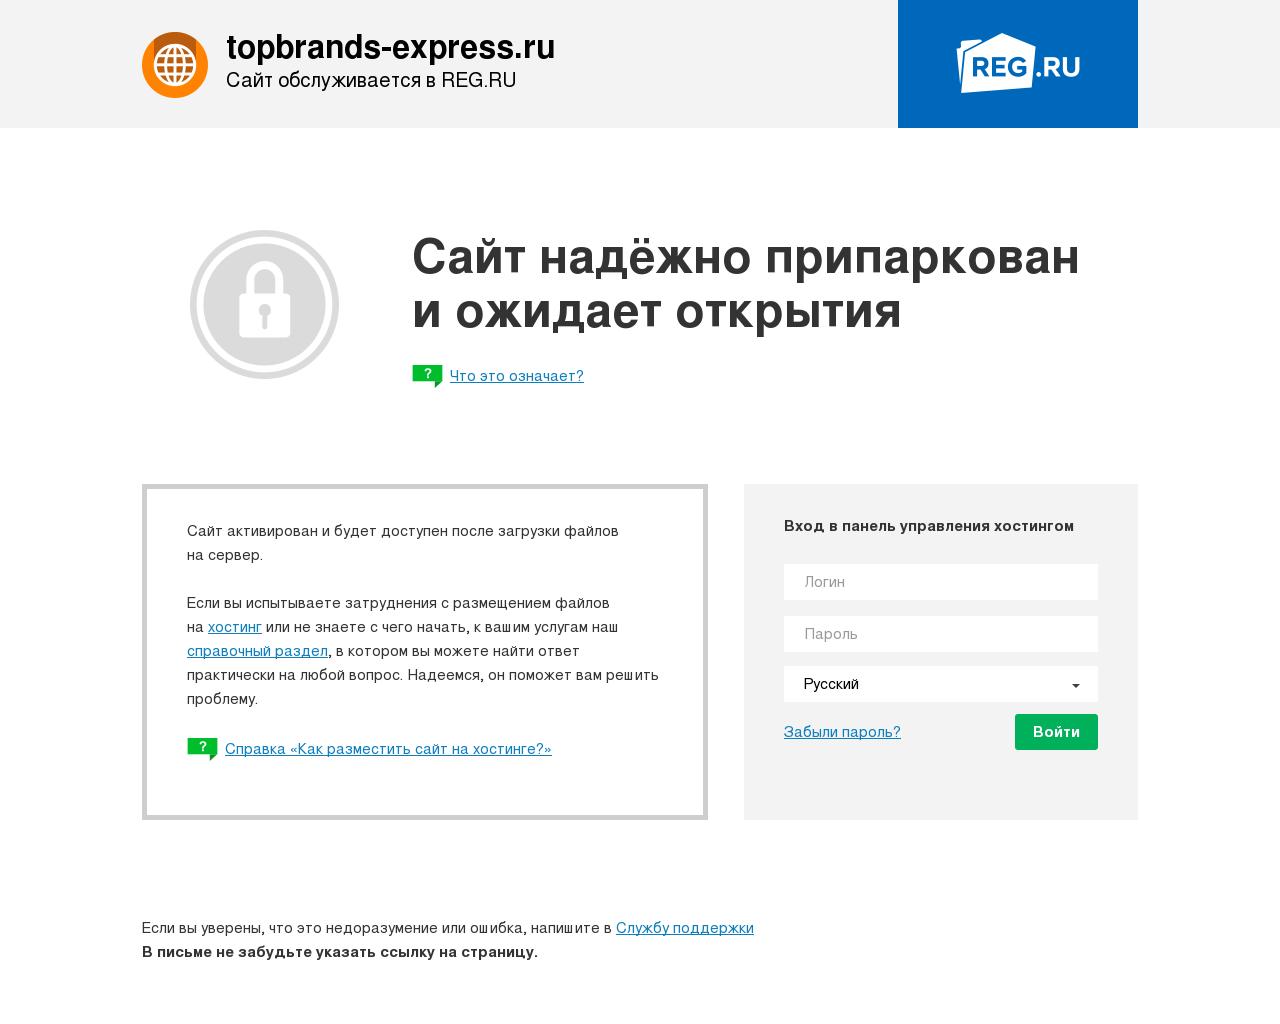 Изображение сайта topbrands-express.ru в разрешении 1280x1024